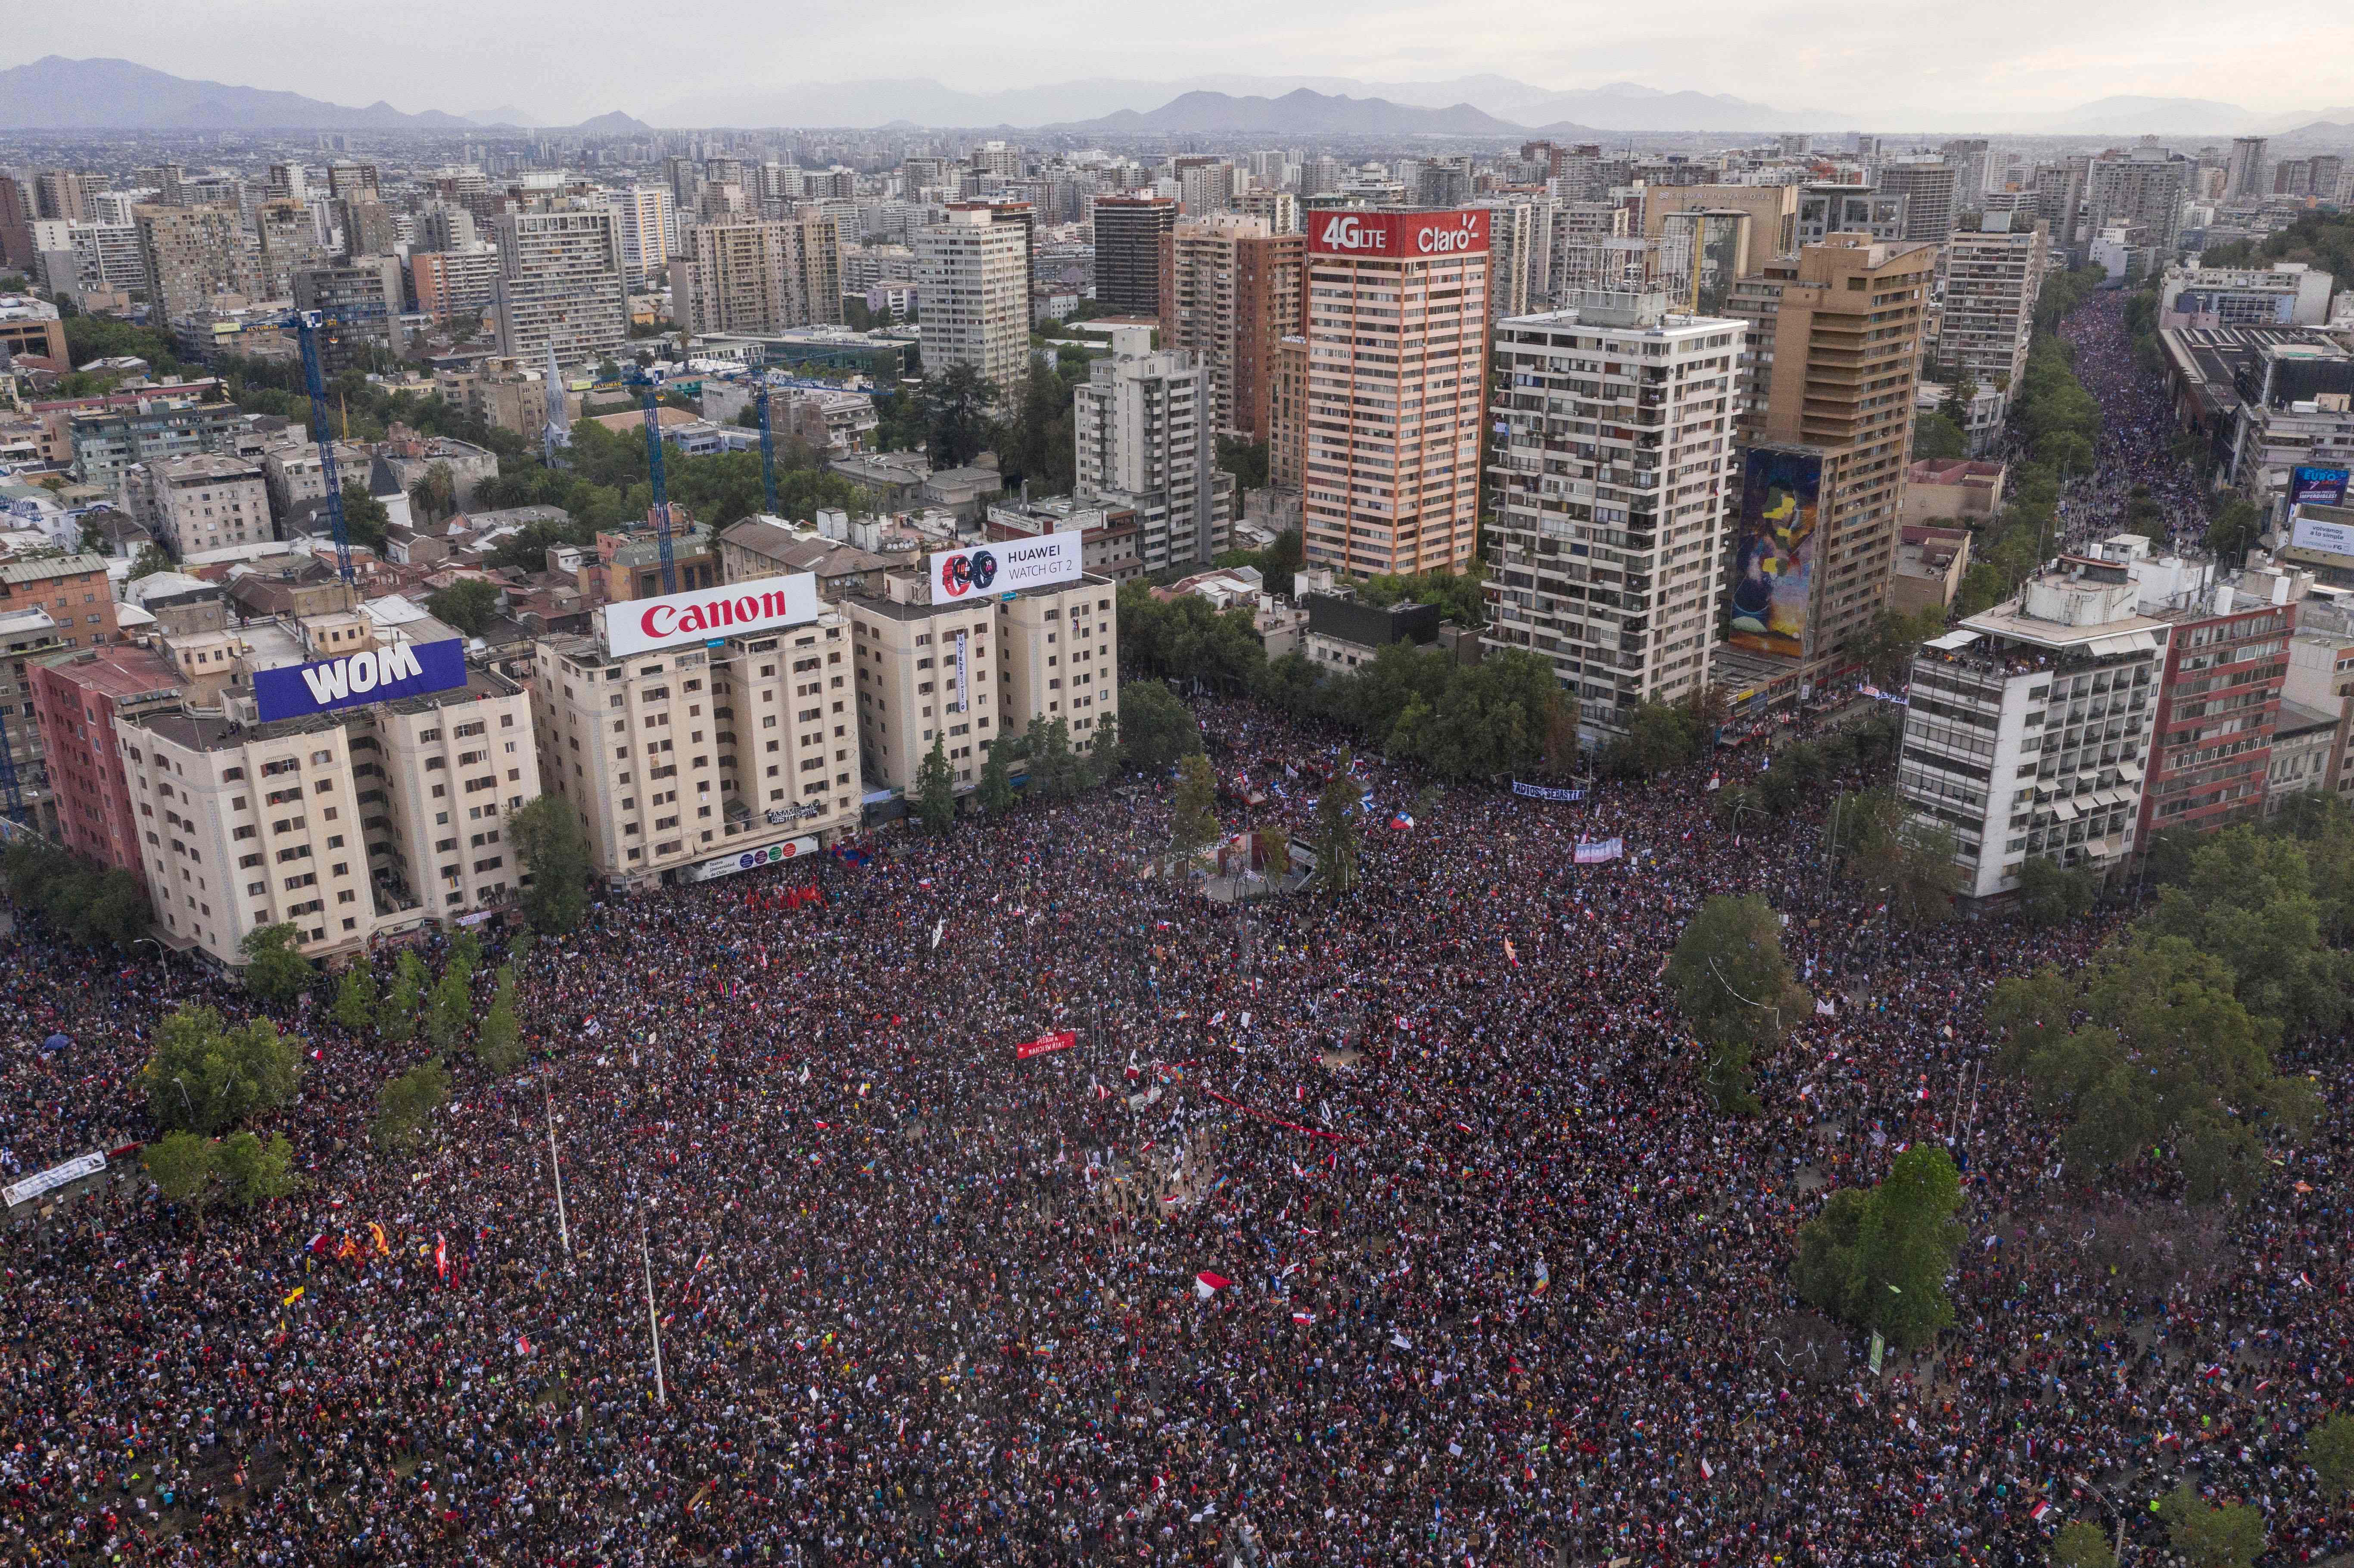 La gigantesca marcha coincide con el más grave estallido de violencia en Chile en los últimos 30 años. (Foto Prensa Libre: AFP) 